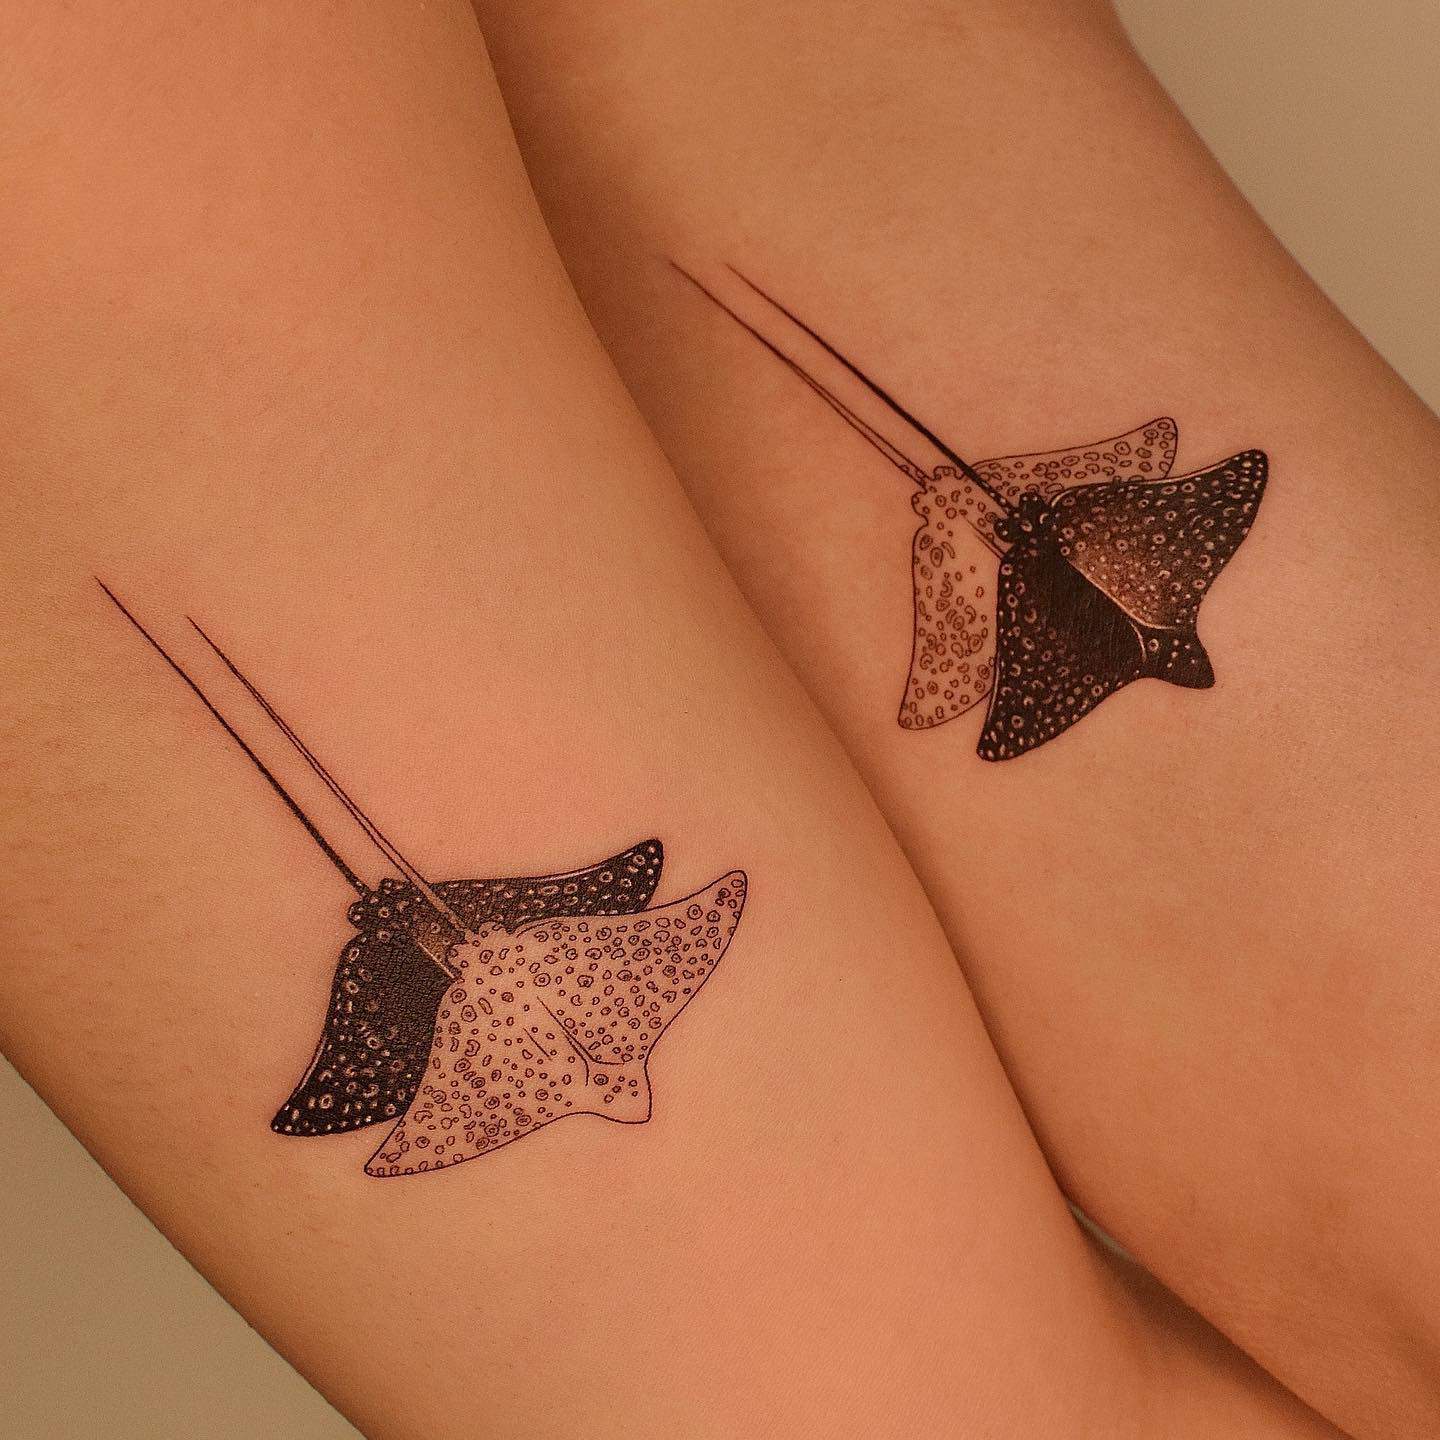 Couple matching tattoo by tattooer jina